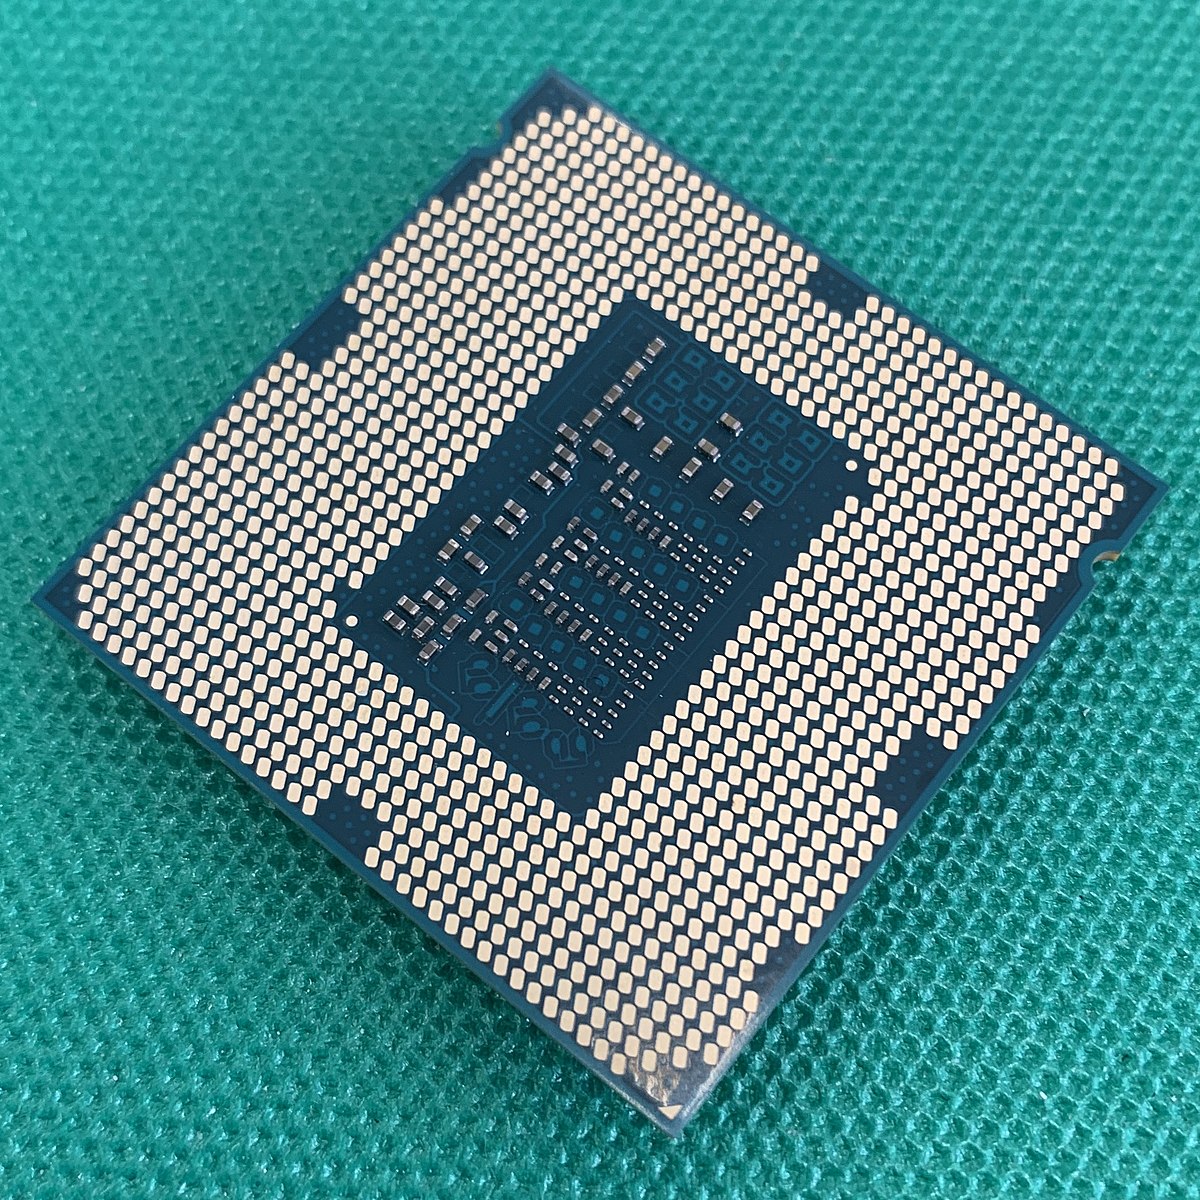 Intel CPU Core-i5-4590 6Mキャッシュ 3.30GHz LGA1150 BX80646I54590